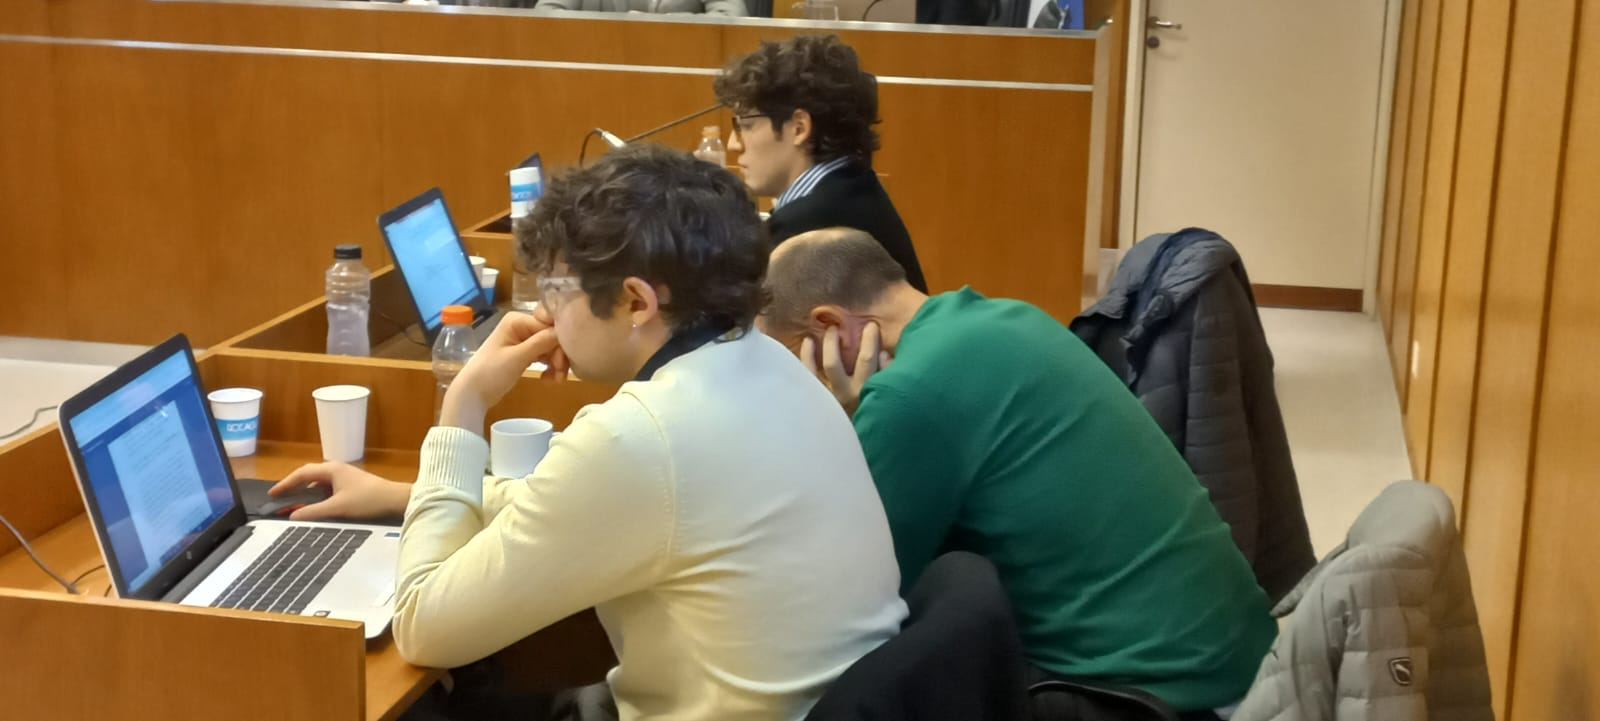 Gatti, de pullover verde, mantuvo la cabeza gacha al escuchar la descripción de los videos de parte de la fiscal Echegaray. foto: Luis Leiva.